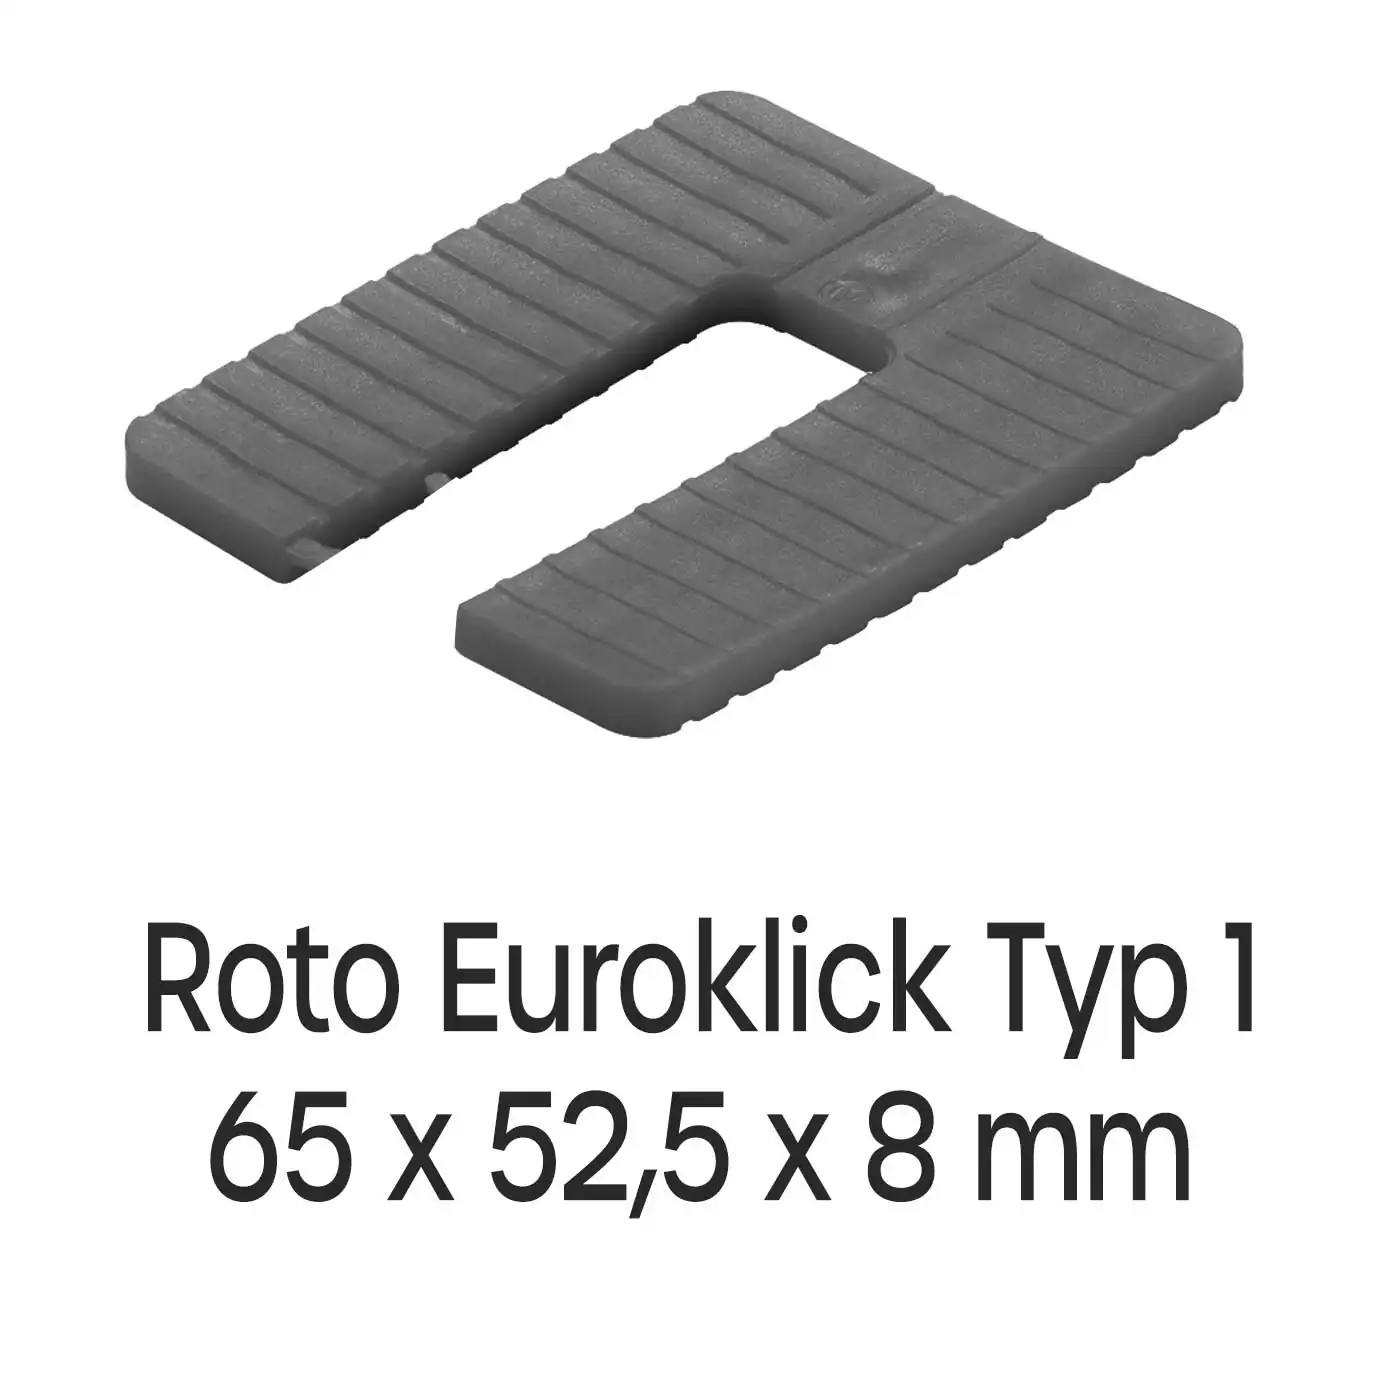 Distanzplatten Roto Euroklick Typ 1 65 x 52,5 x 8 mm 500 Stück